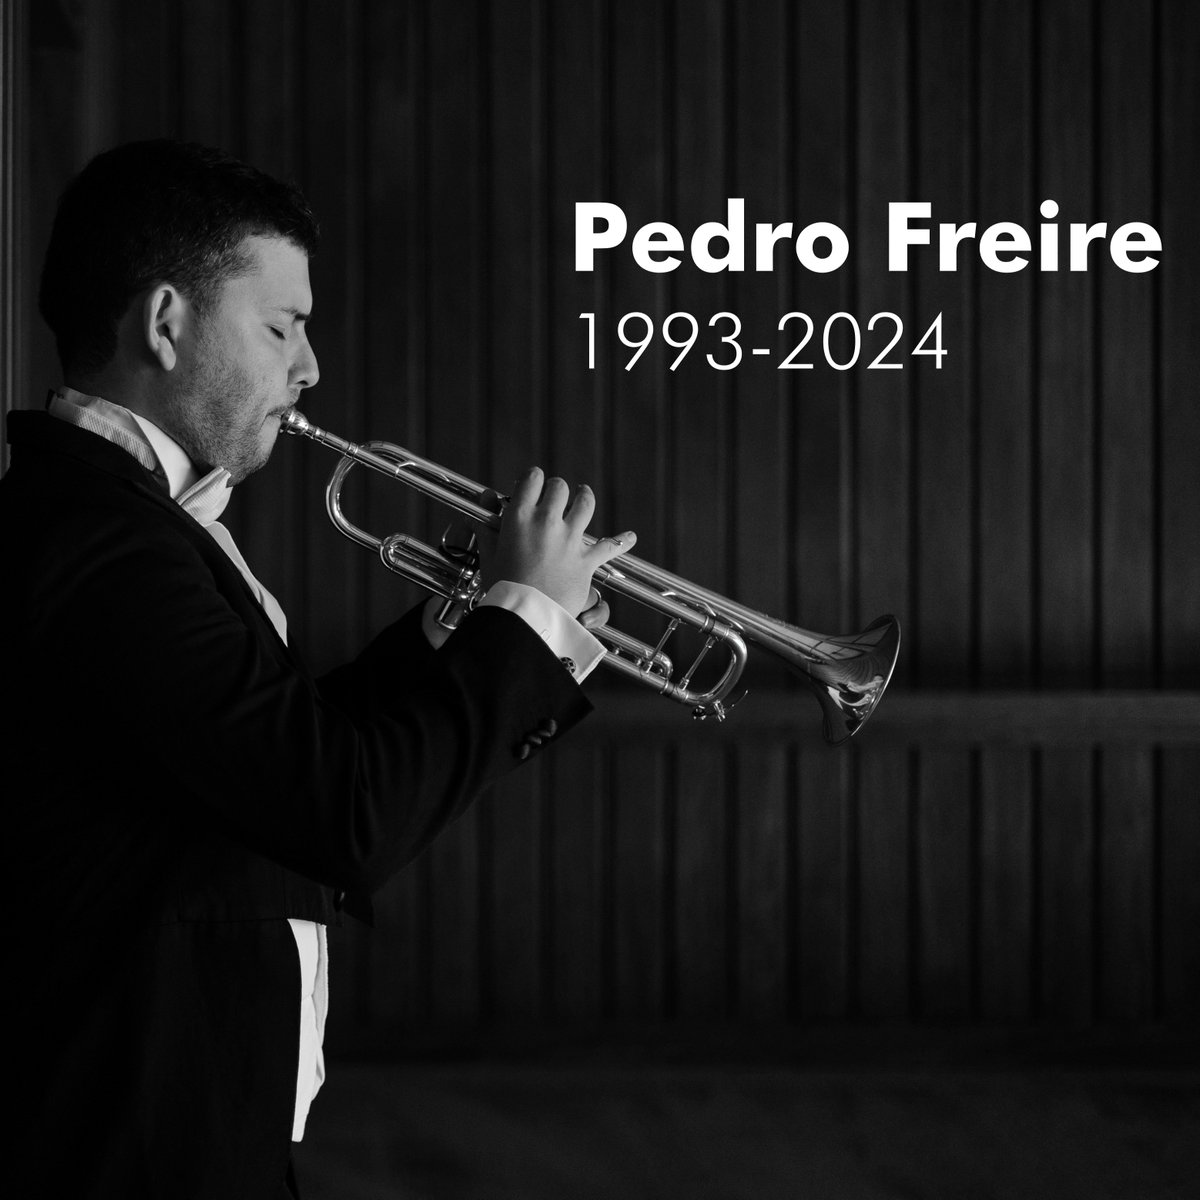 Foi com profunda tristeza que recebemos a notícia do falecimento inesperado do músico Pedro Freire, trompetista da Orquestra Gulbenkian. 
Enviamos aos seus familiares e amigos as mais sinceras condolências e dedicamos os concertos desta semana à sua memória.